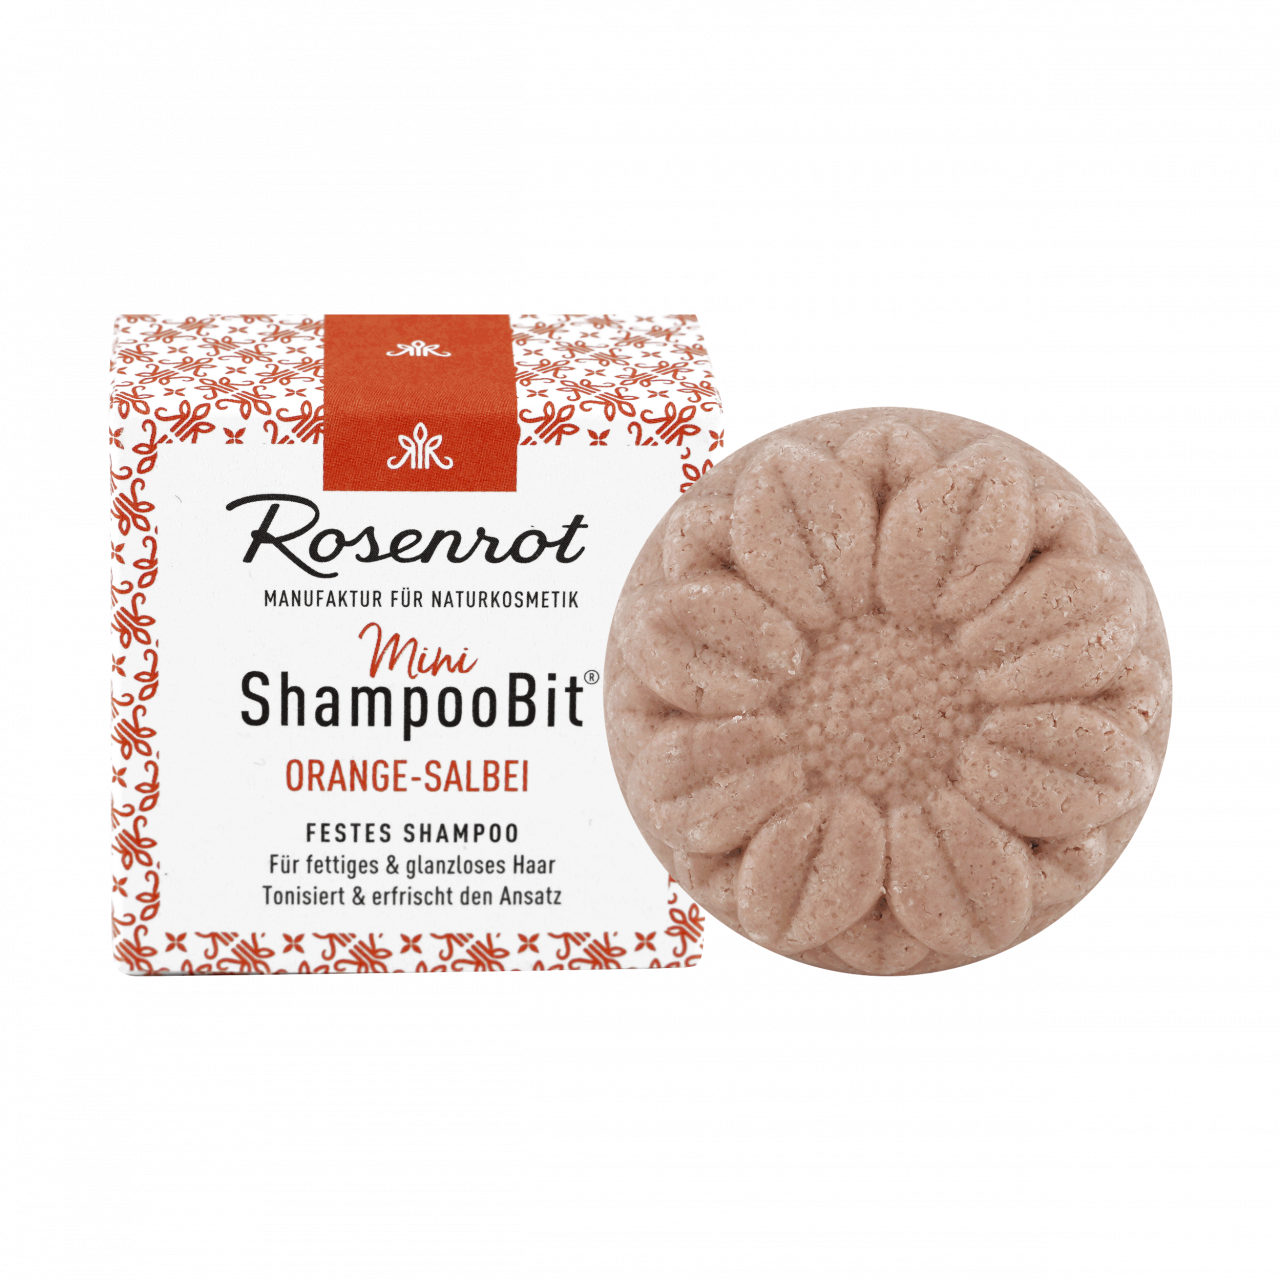 Mini ShampooBit® - Orange-Sage